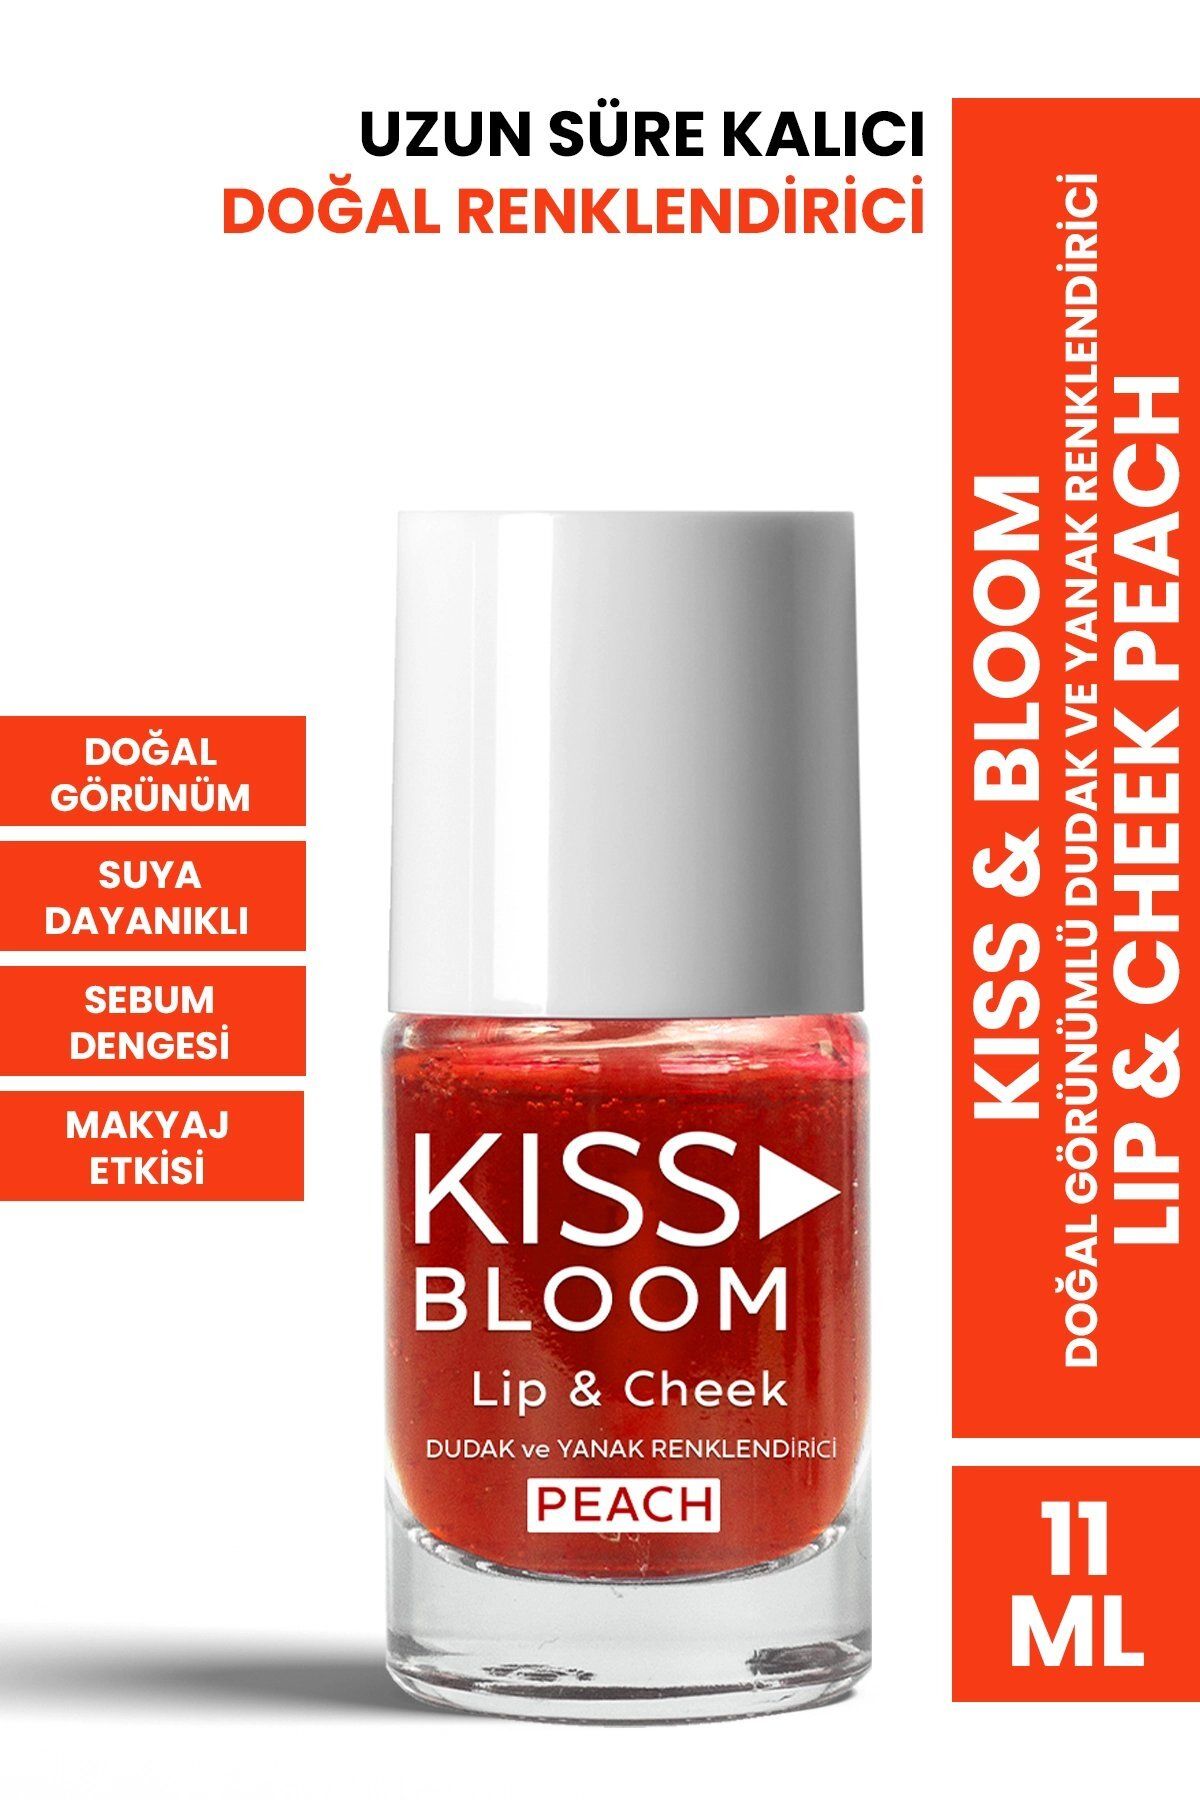 PROCSIN Kiss & Bloom Doğal Görünümlü Dudak ve Yanak Renklendirici Lip & Cheek Peach 11 ml